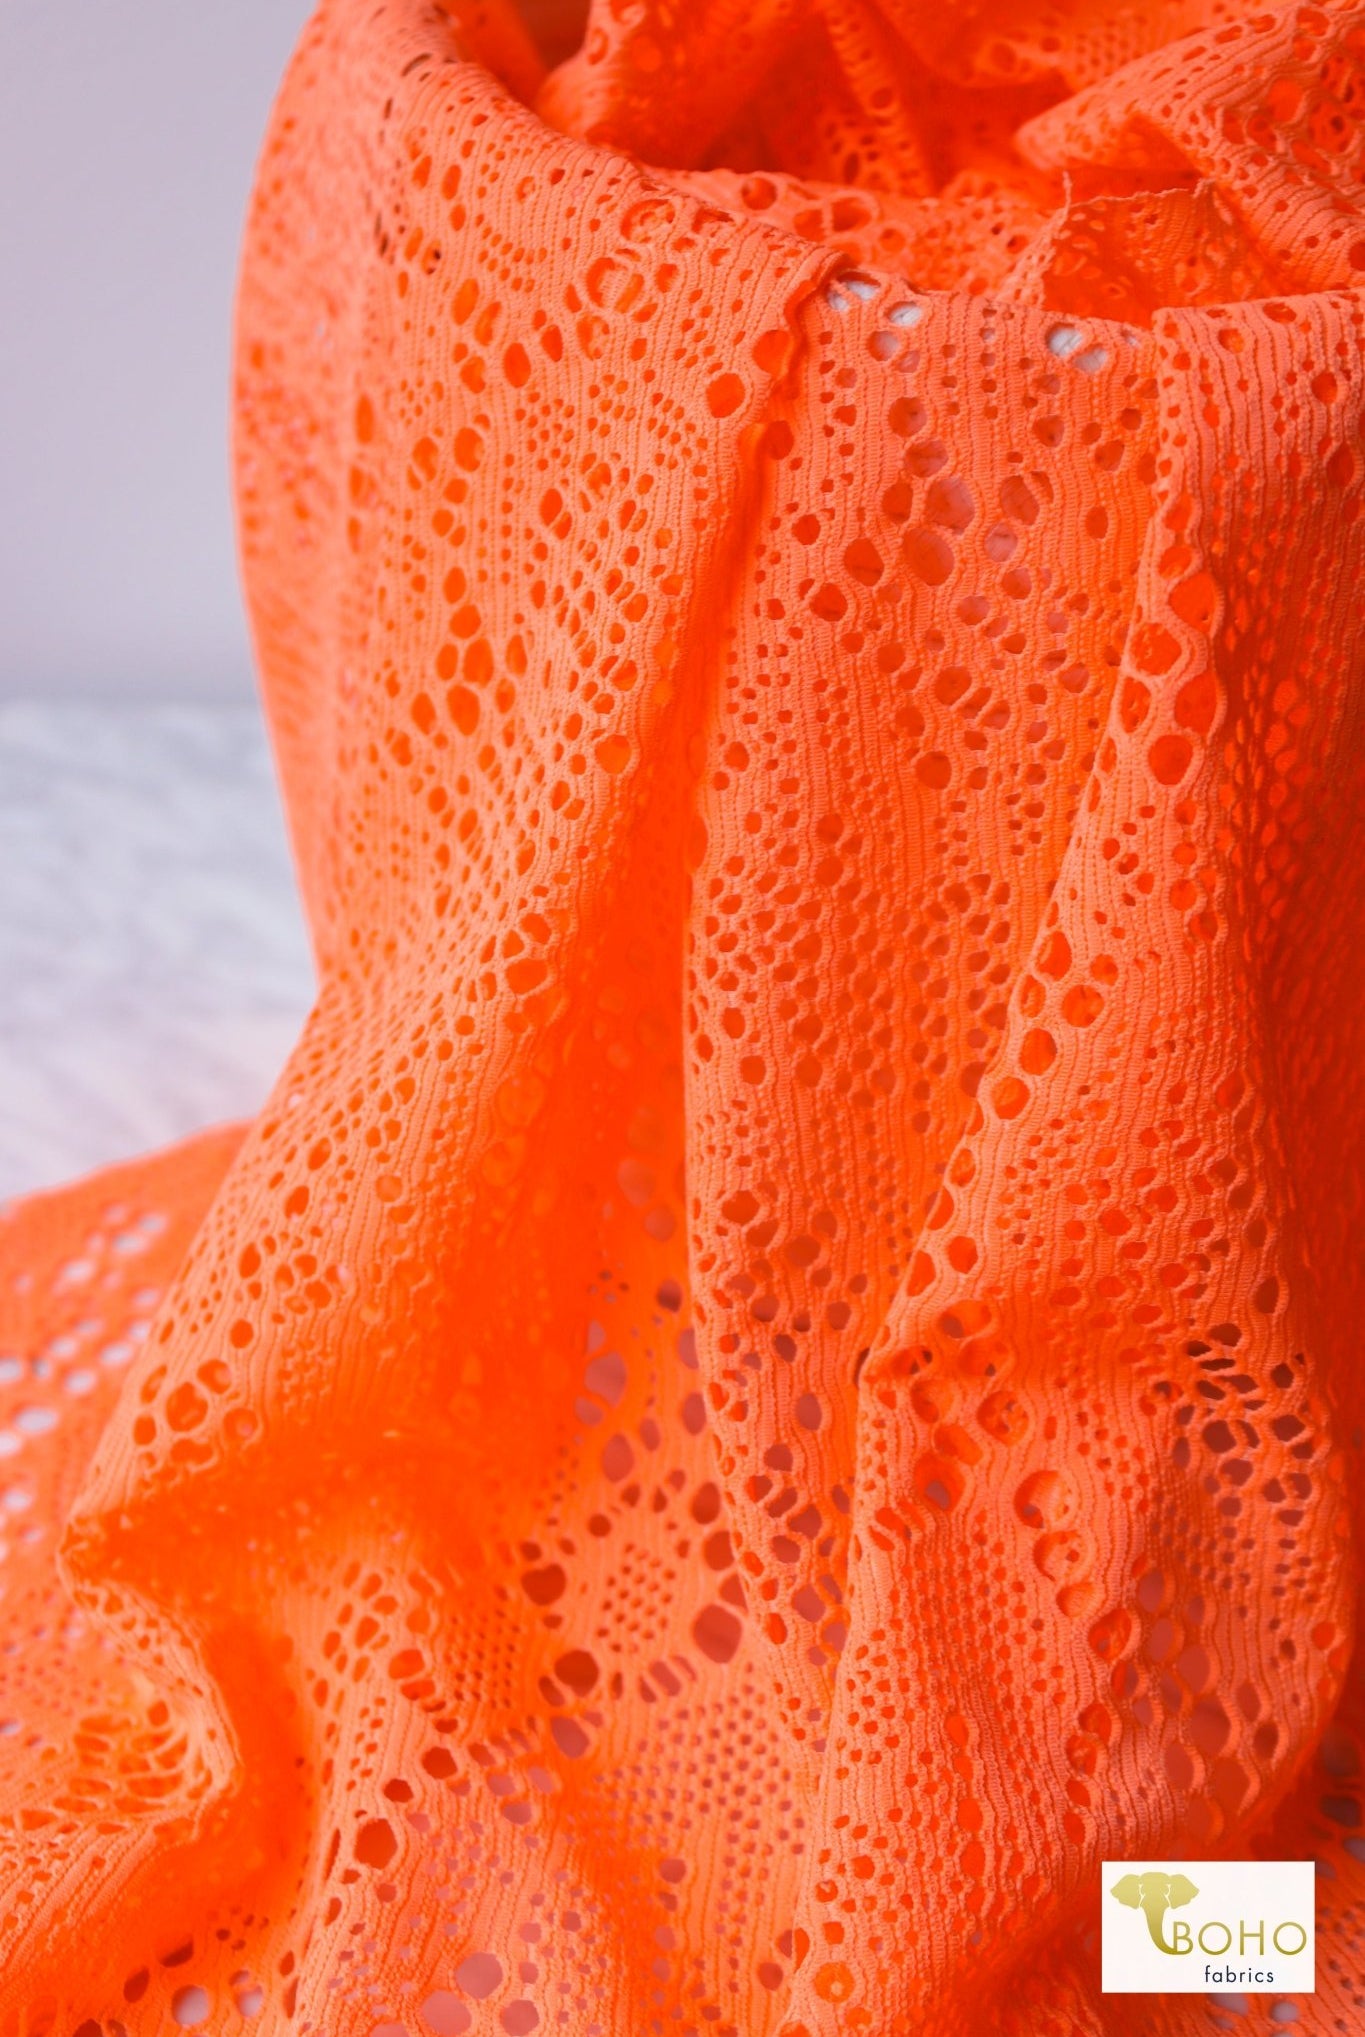 Cresendo in Neon Orange, Stretch Lace Fabric - Boho Fabrics - Stretch Lace Fabric